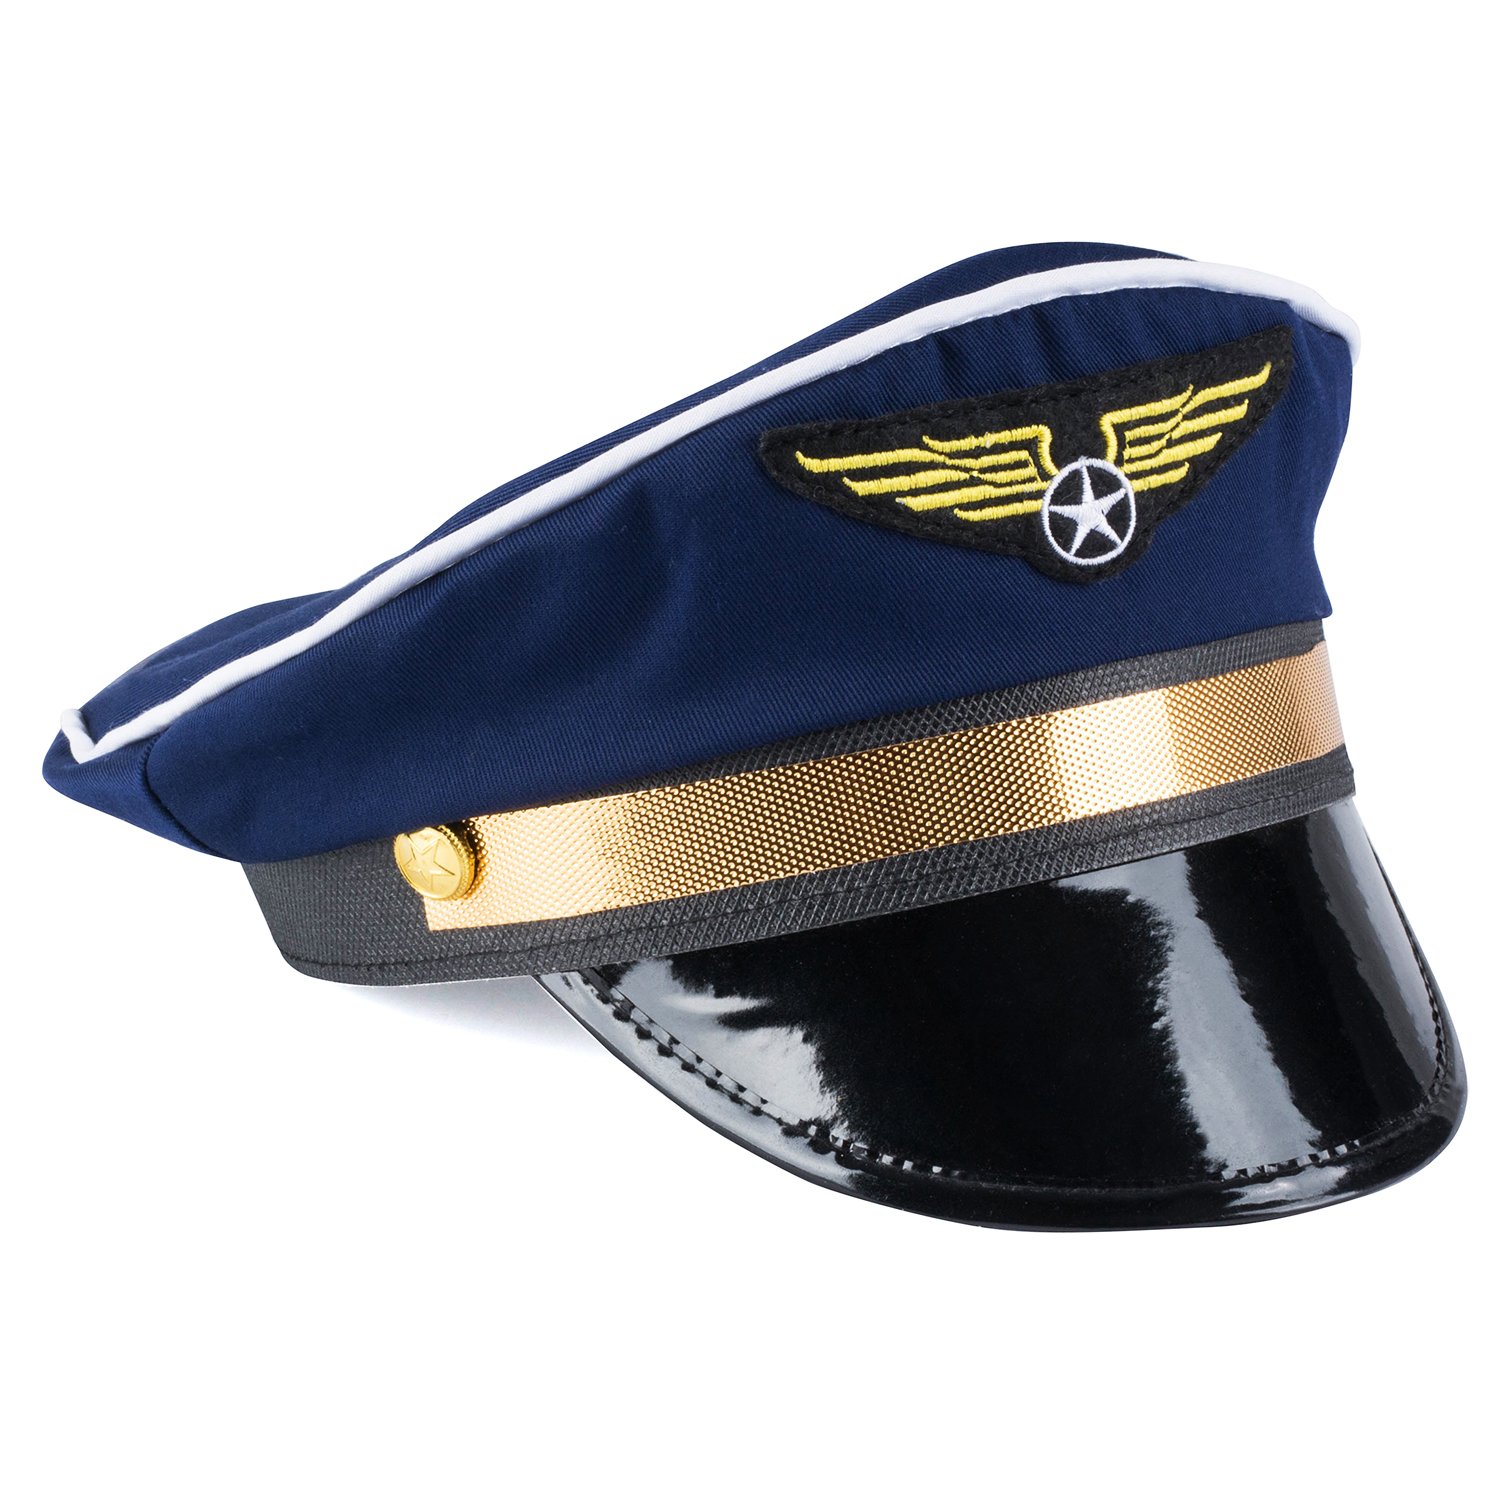 Navy blue captain pilot hat with gold emblem